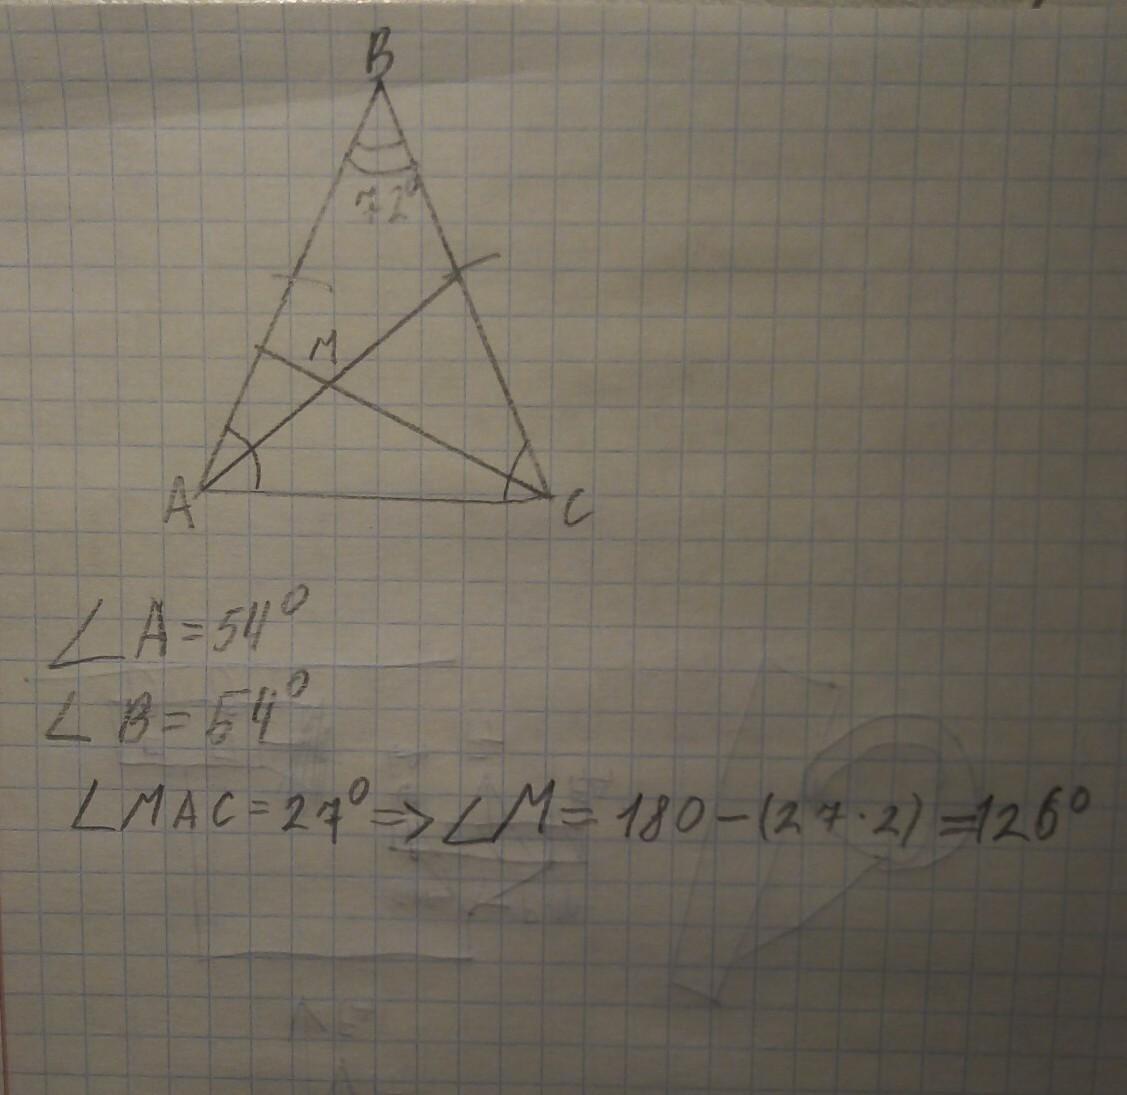 Треугольник абс аб равно бц. Треугольник АБС. Биссектриса. В треугольнике АВС угол стороны АВ И вс равны. В равнобедренном треугольнике пересекаются биссектрисы углов.